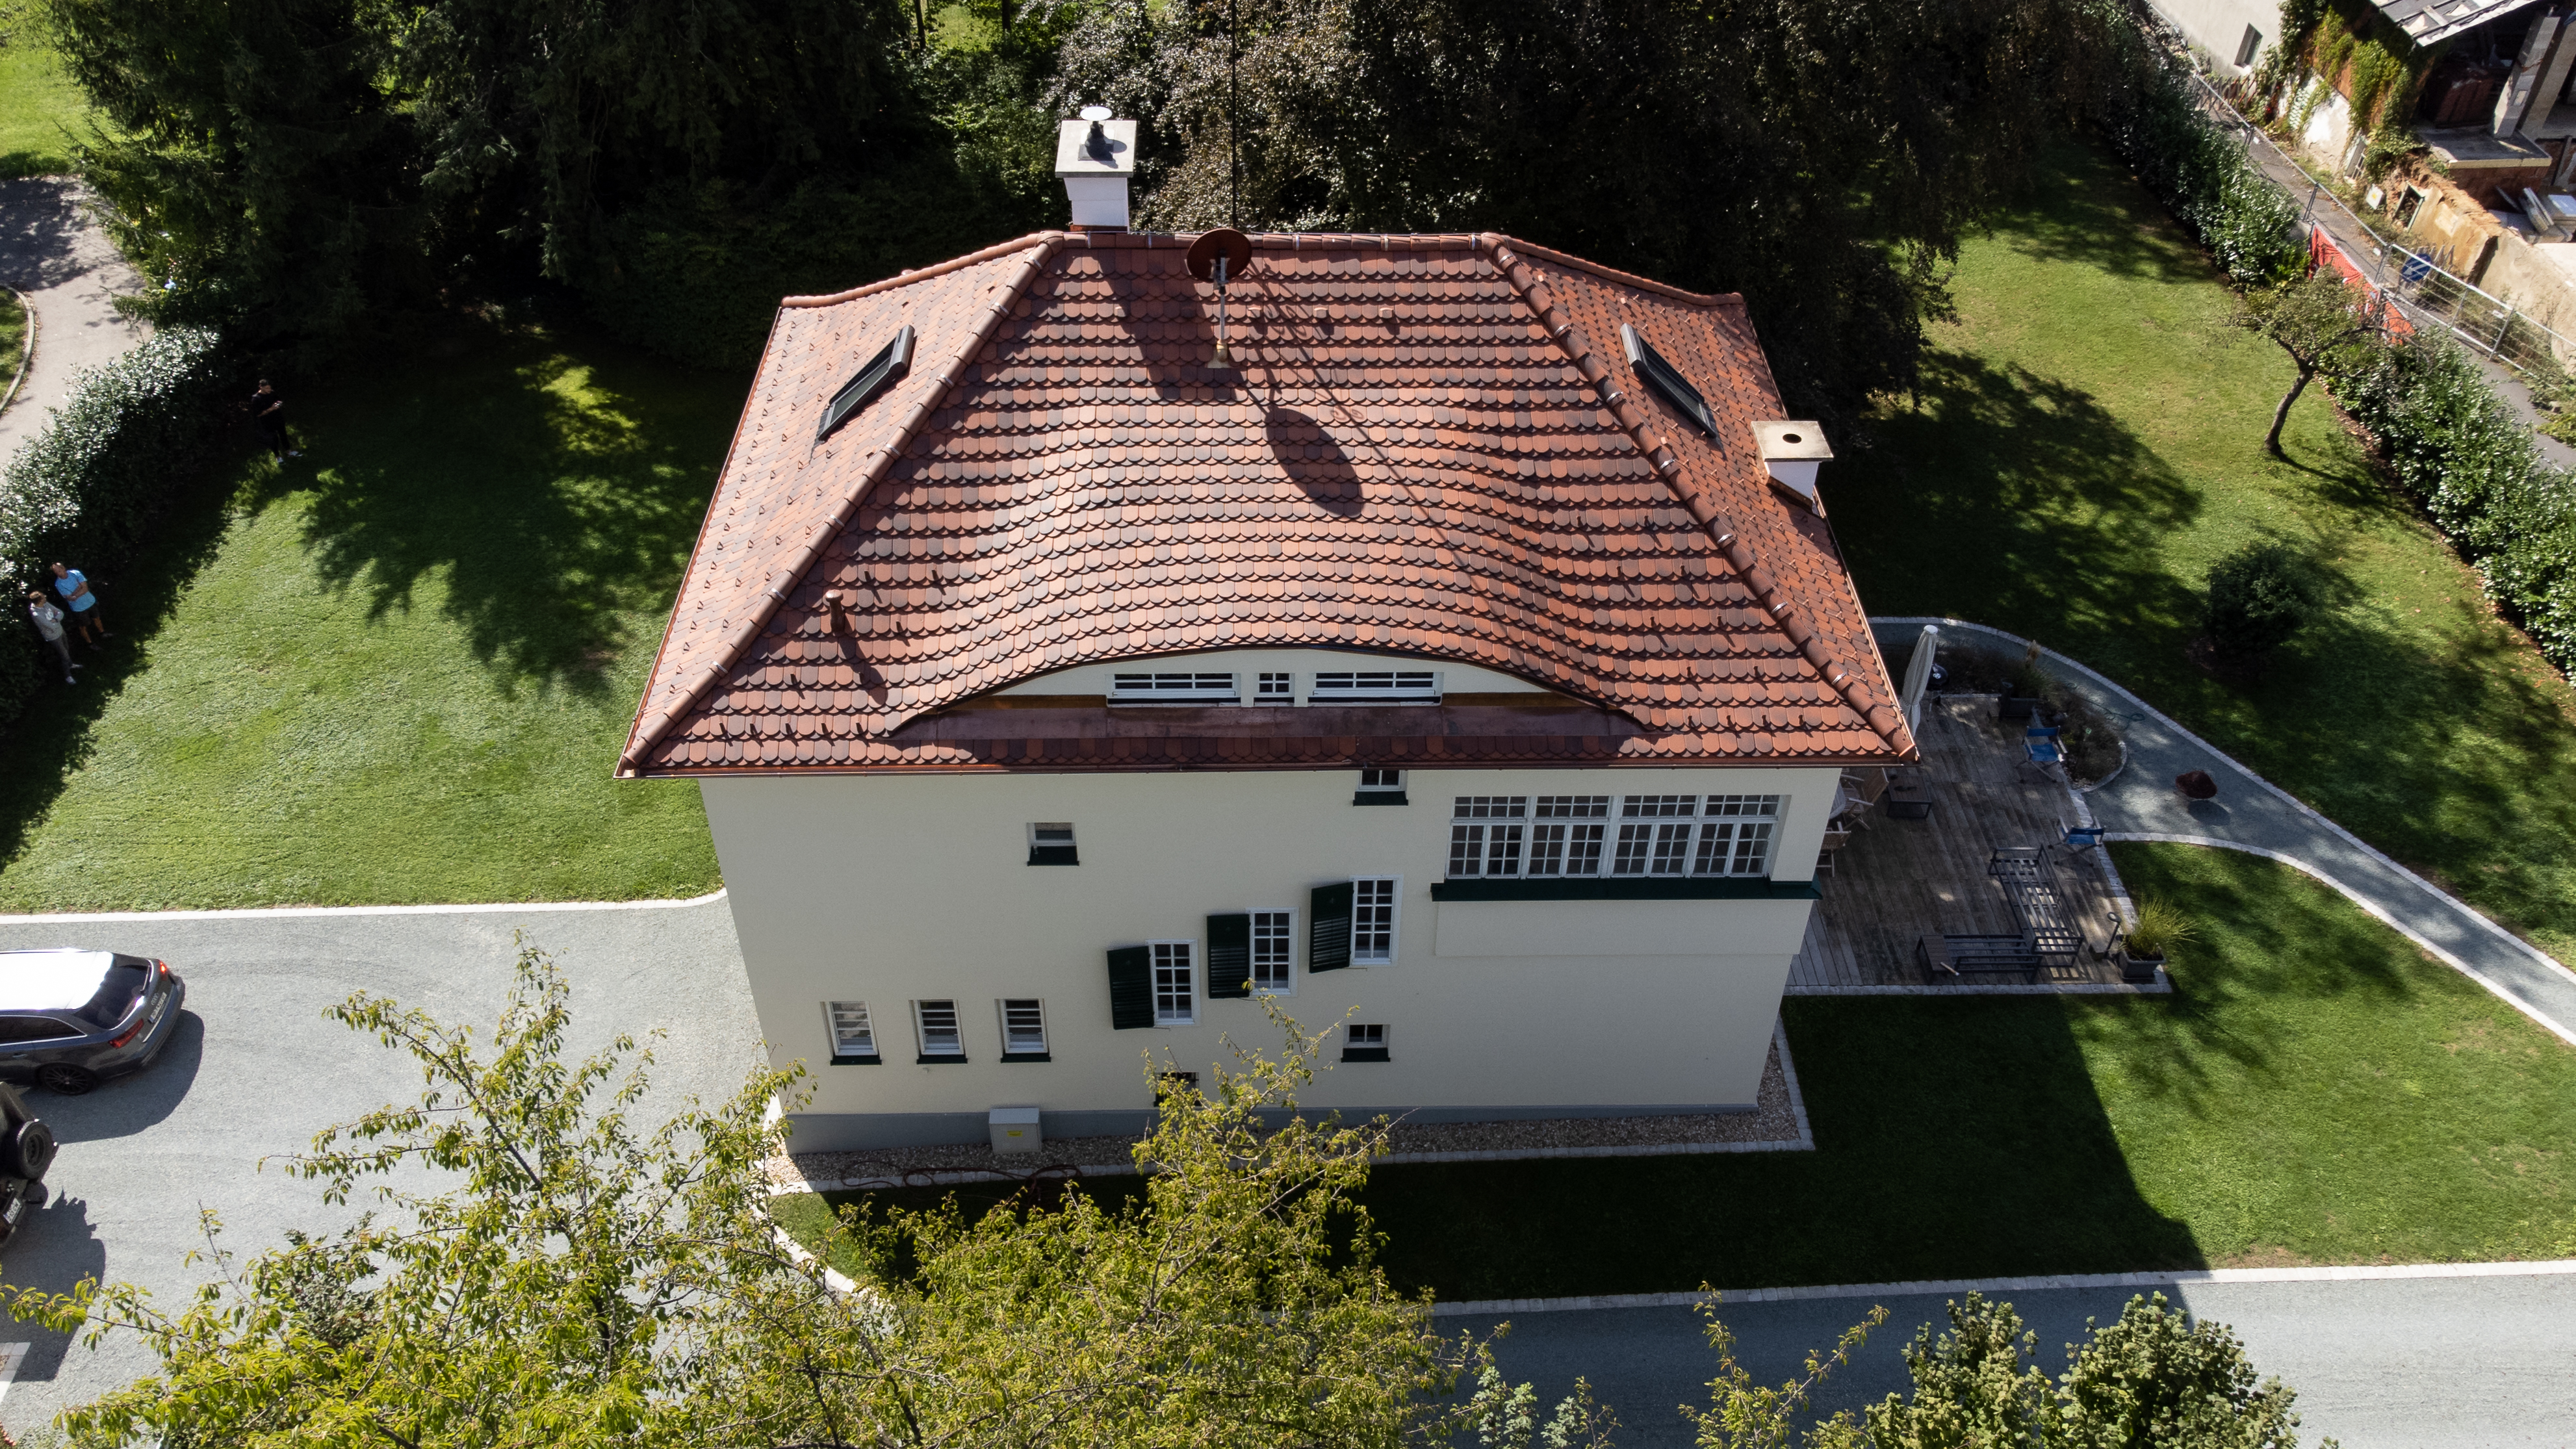 Referenzprojekt der Dachprofi GmbH aus Fürstenfeld